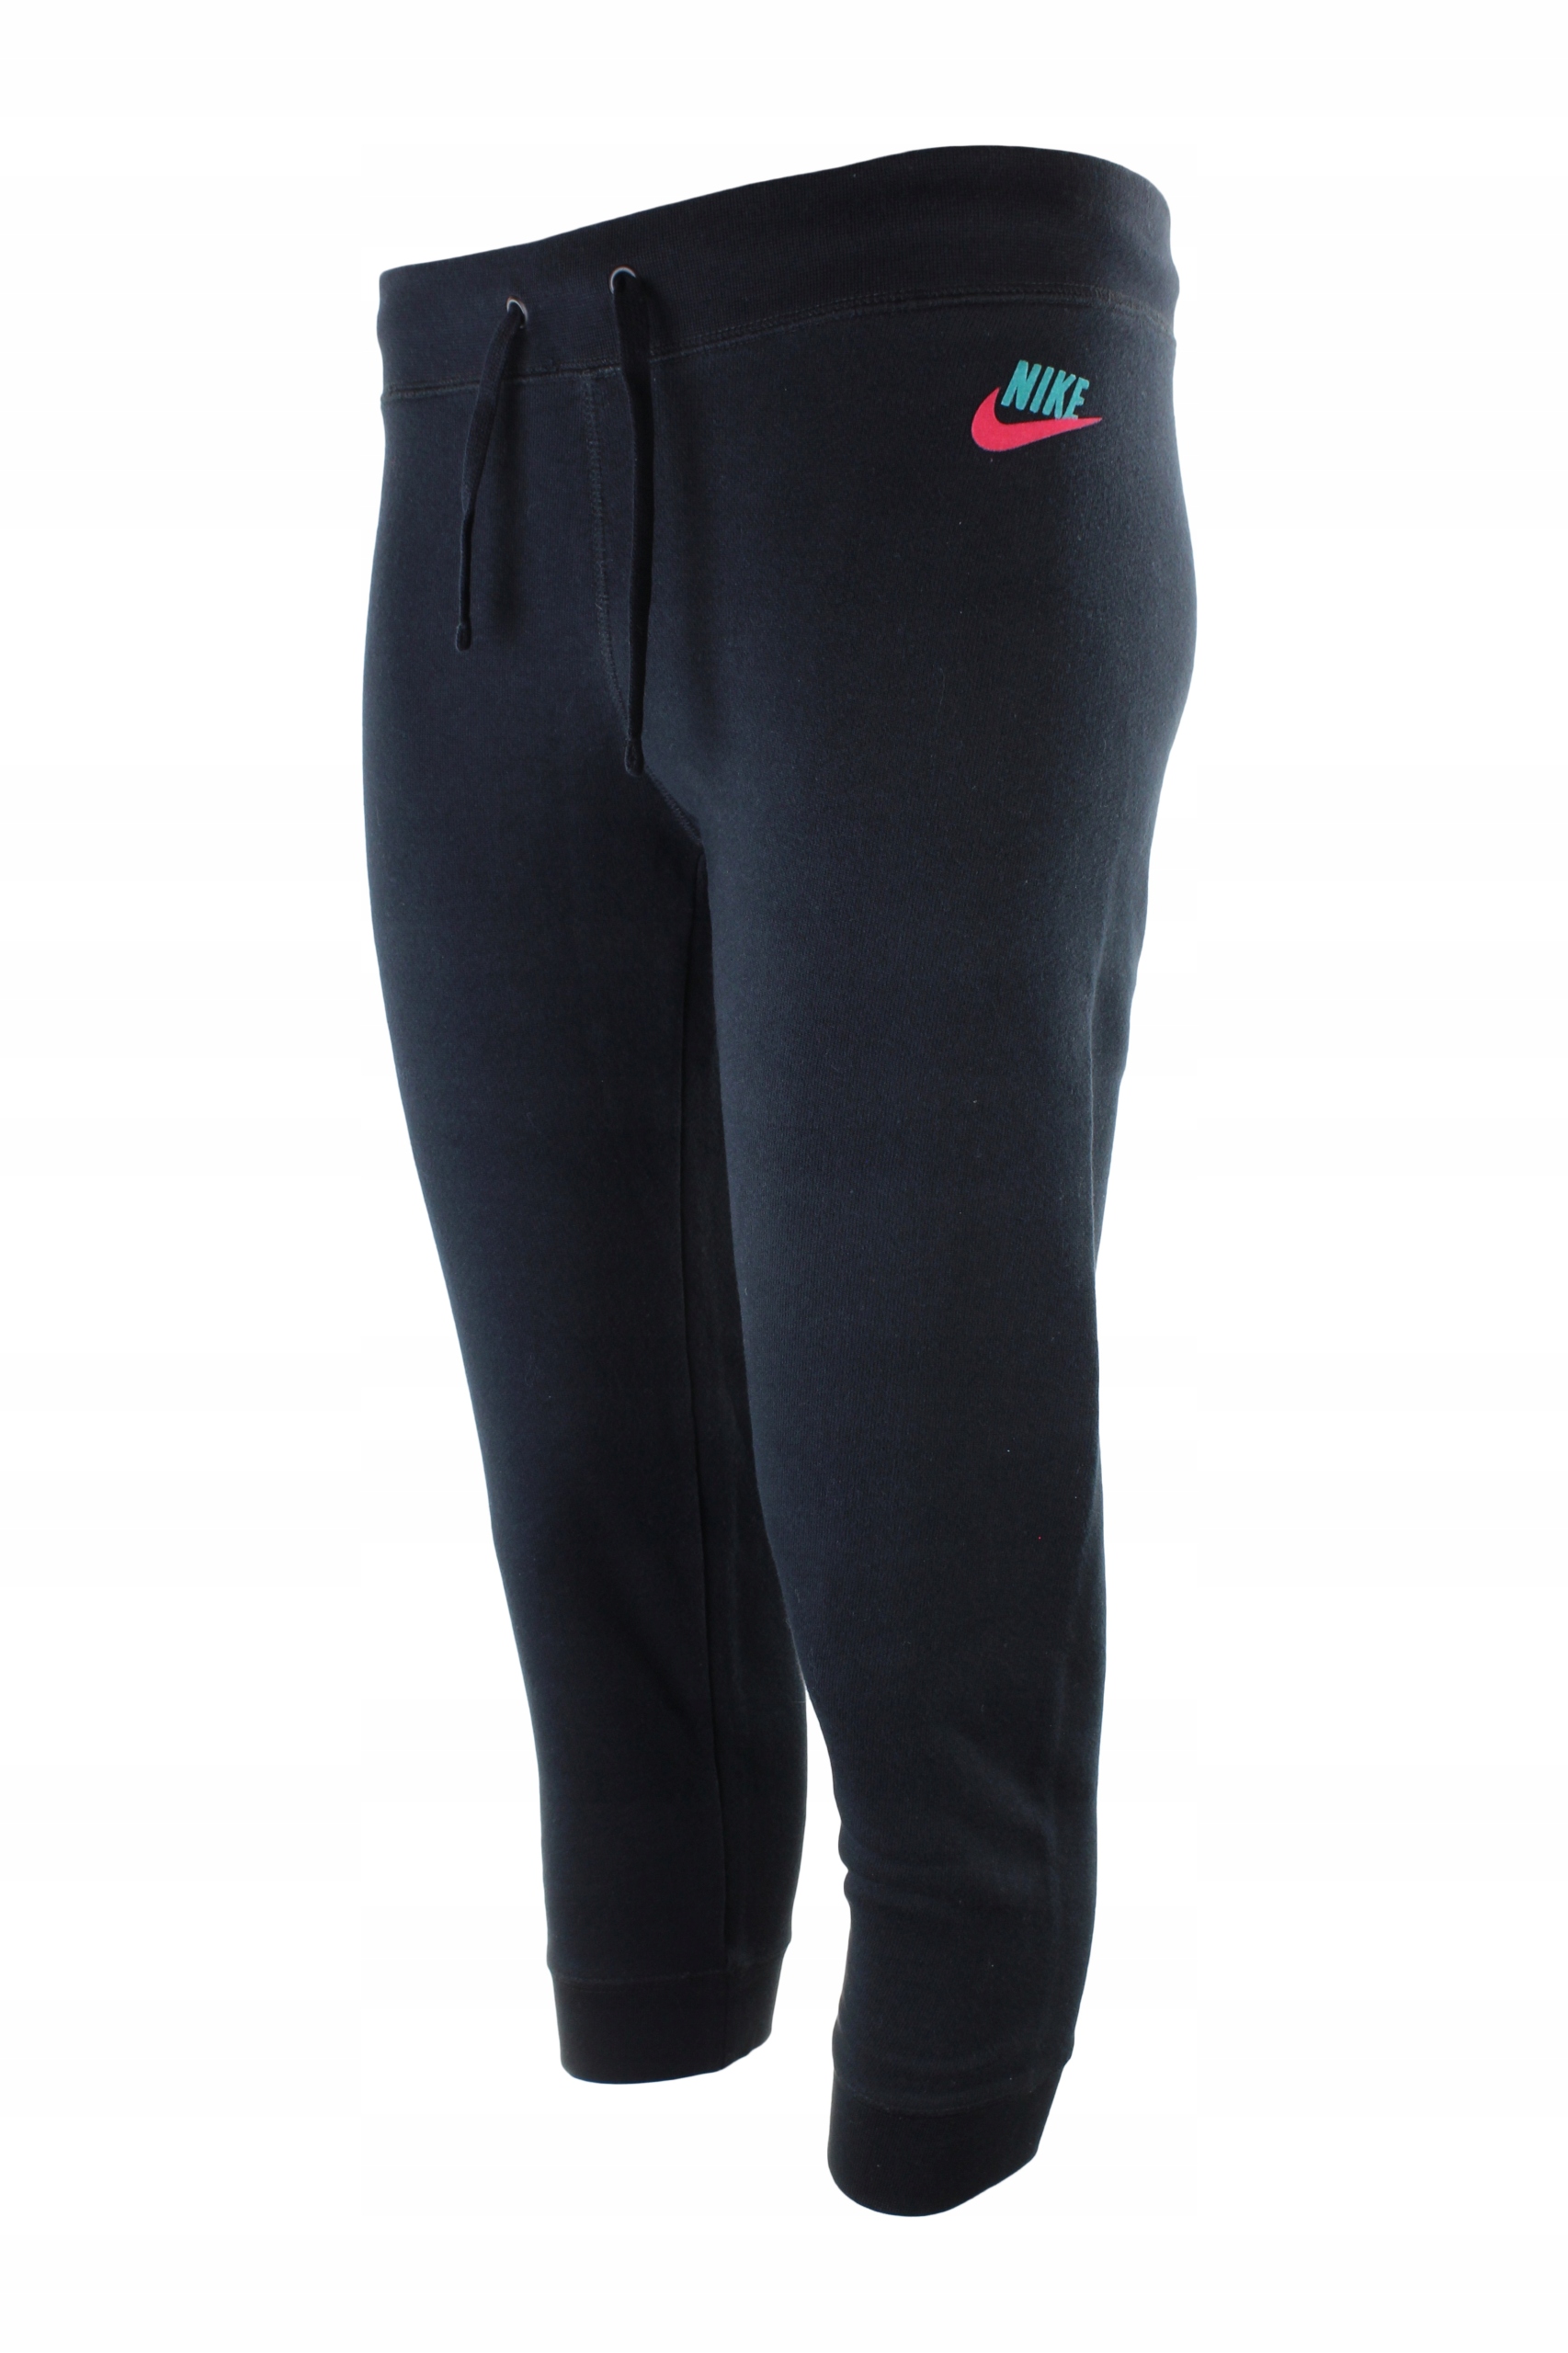 Spodnie Nike HBR CAPRI 3/4 503552 017 M 12810513023 - Allegro.pl